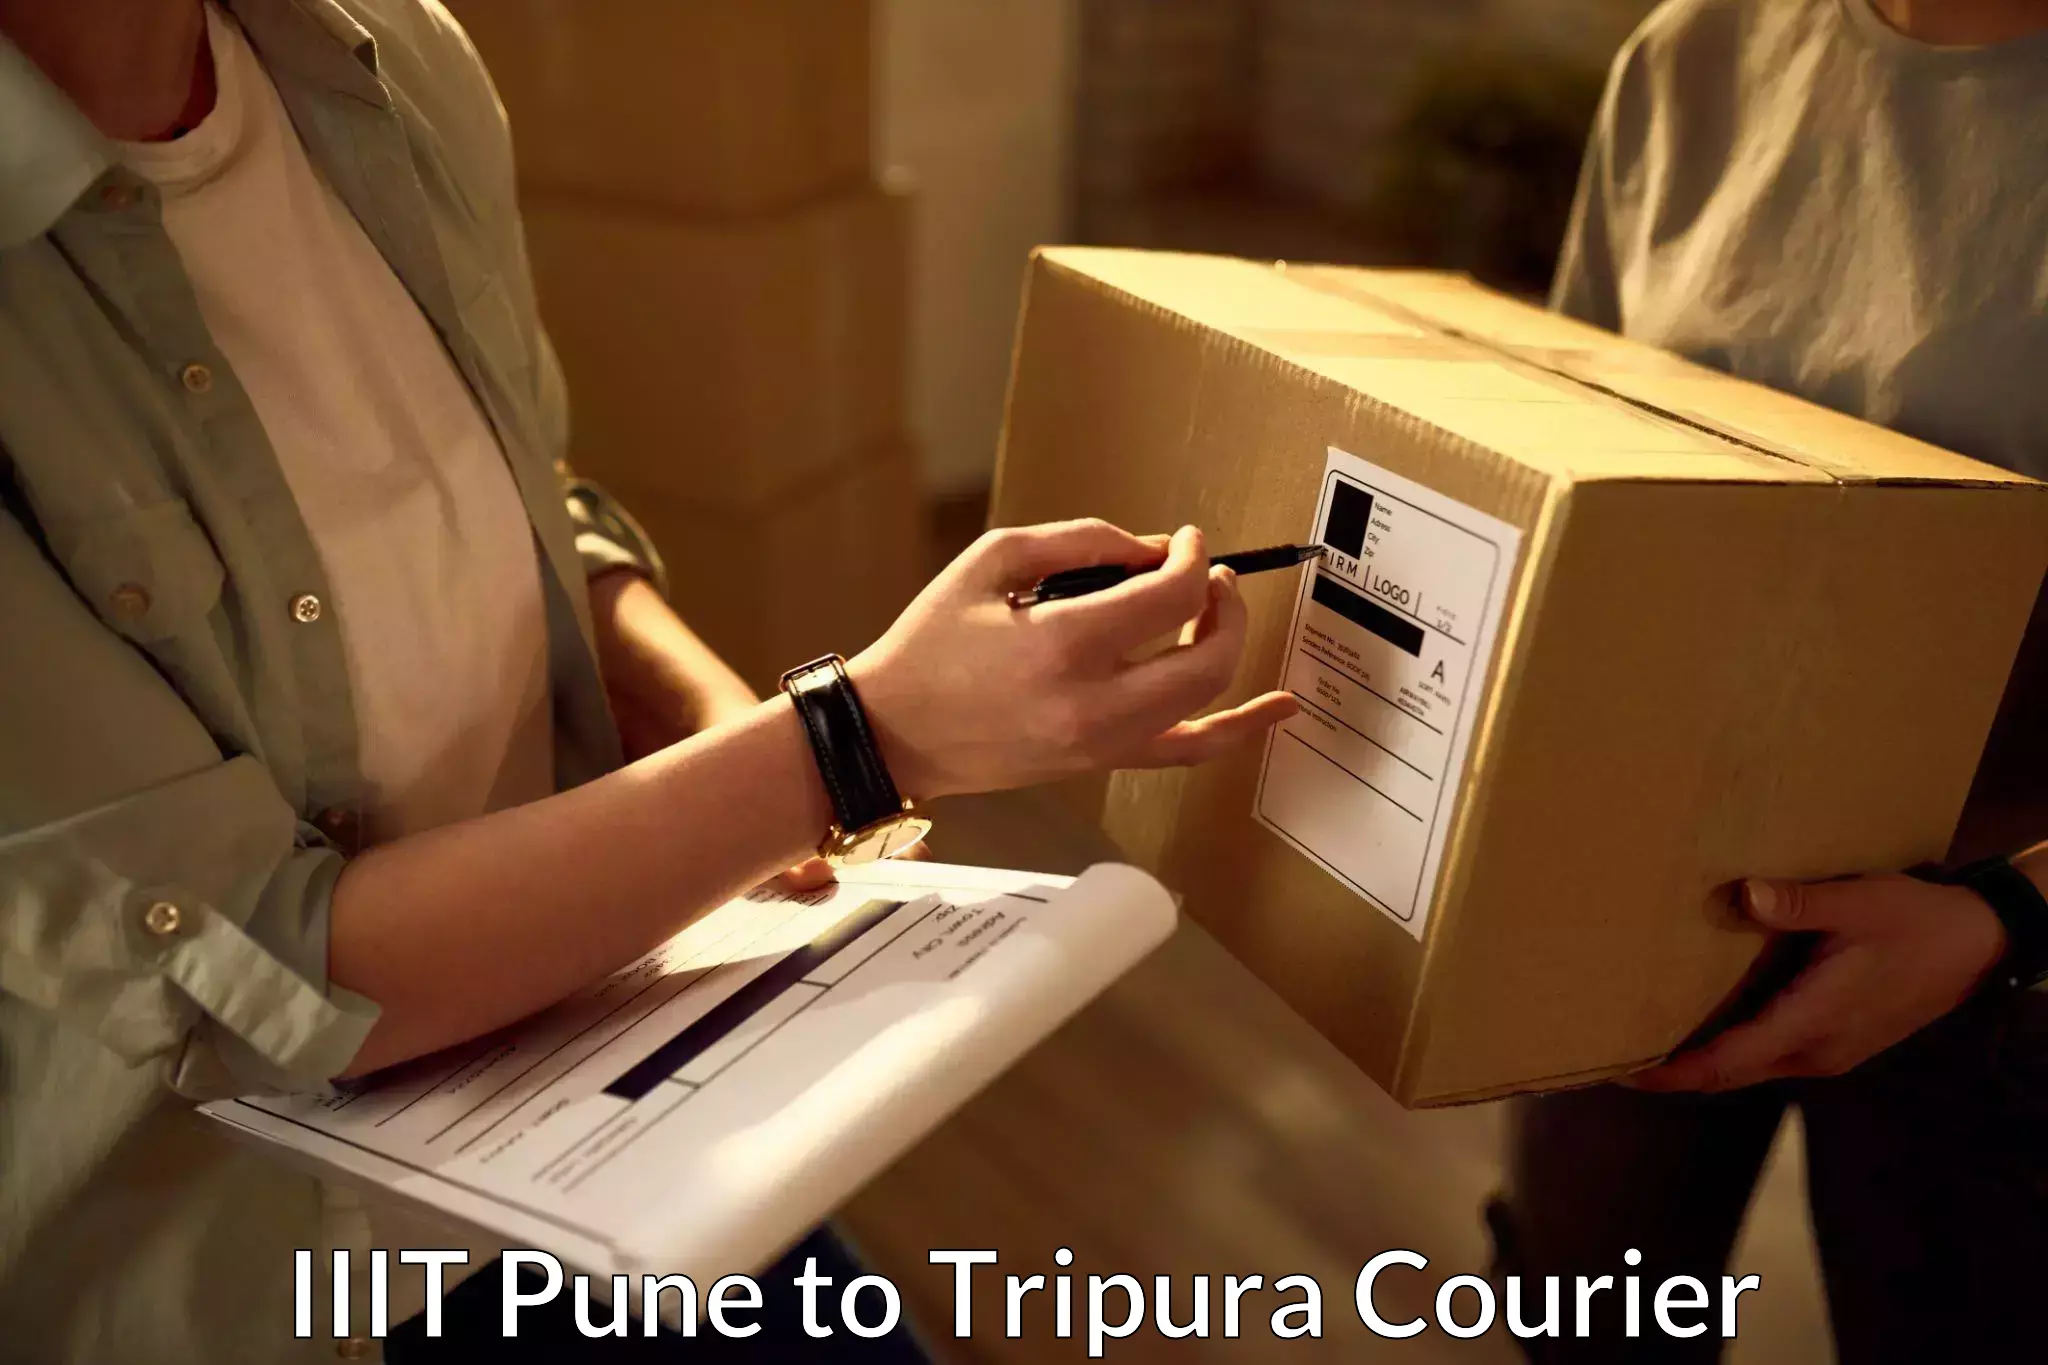 Express package handling in IIIT Pune to Agartala